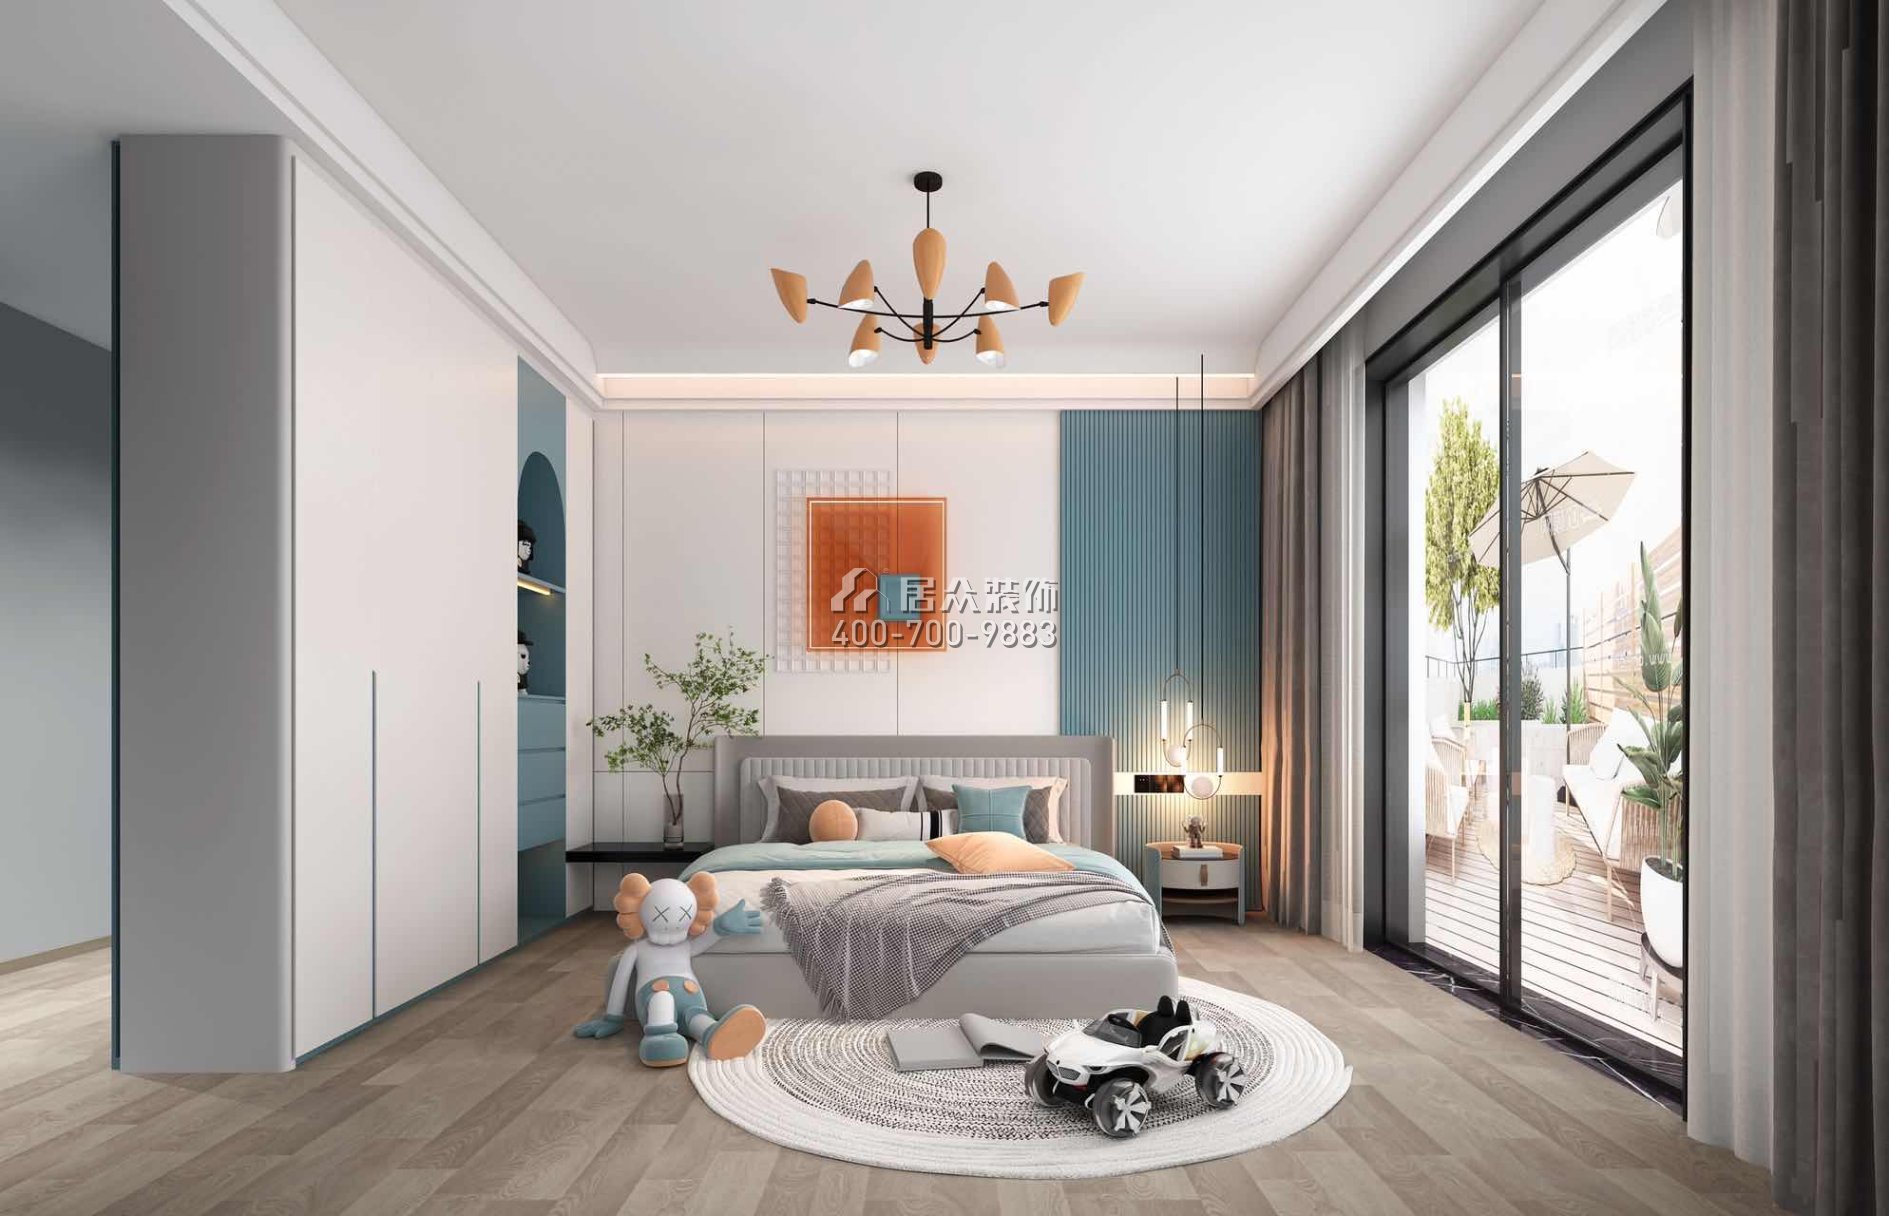 海逸豪庭321平方米現代簡約風格別墅戶型臥室裝修效果圖